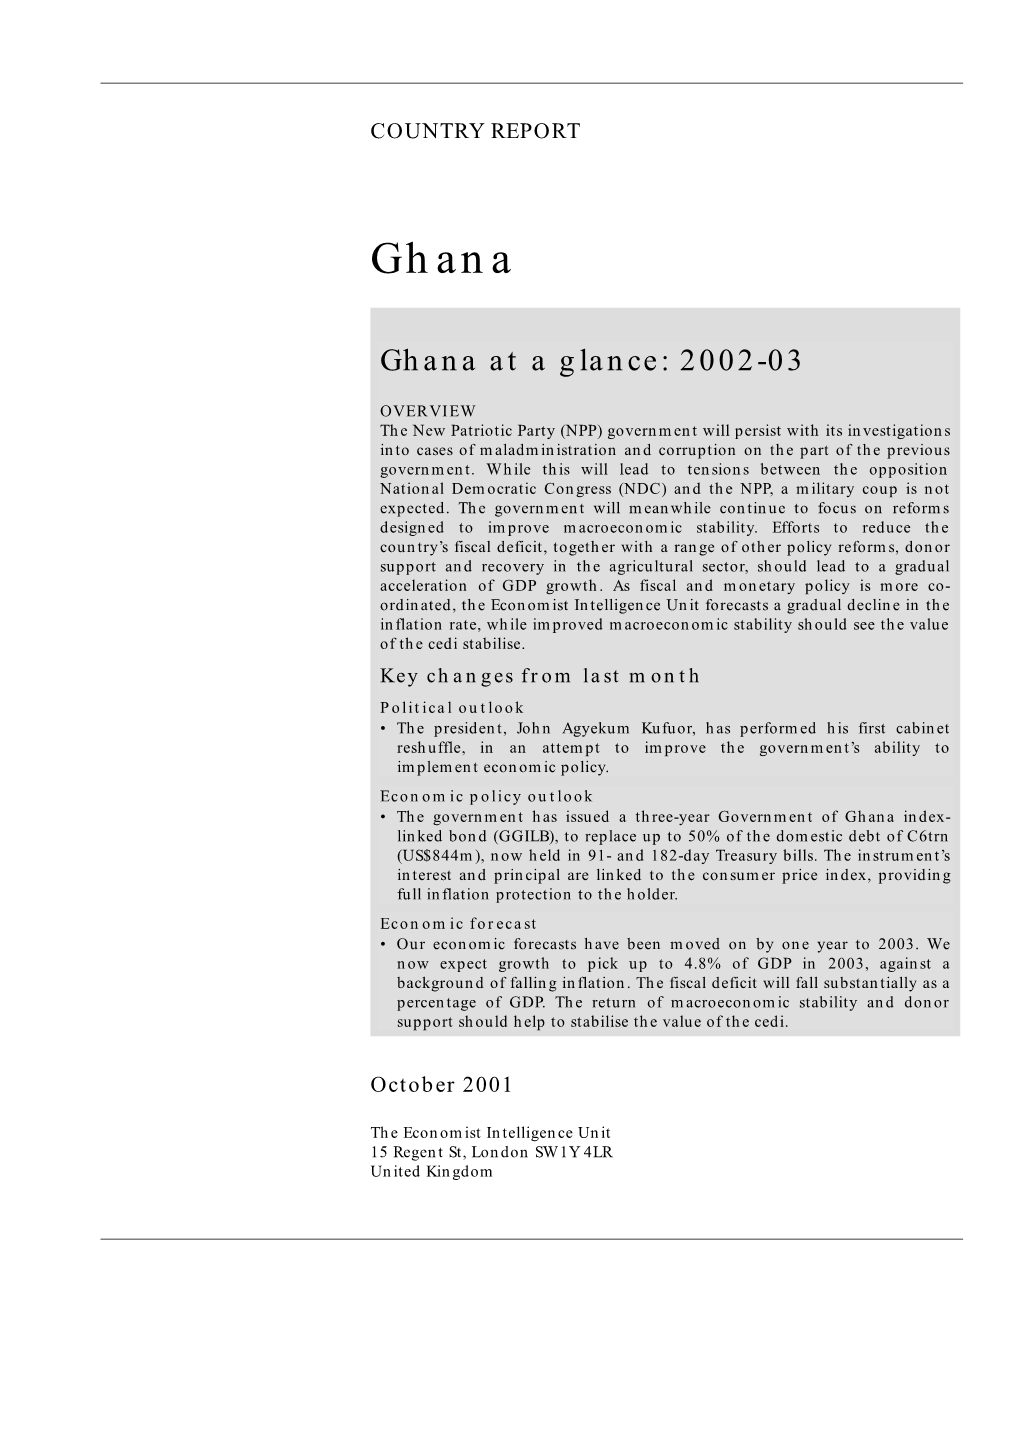 Ghana at a Glance: 2002-03